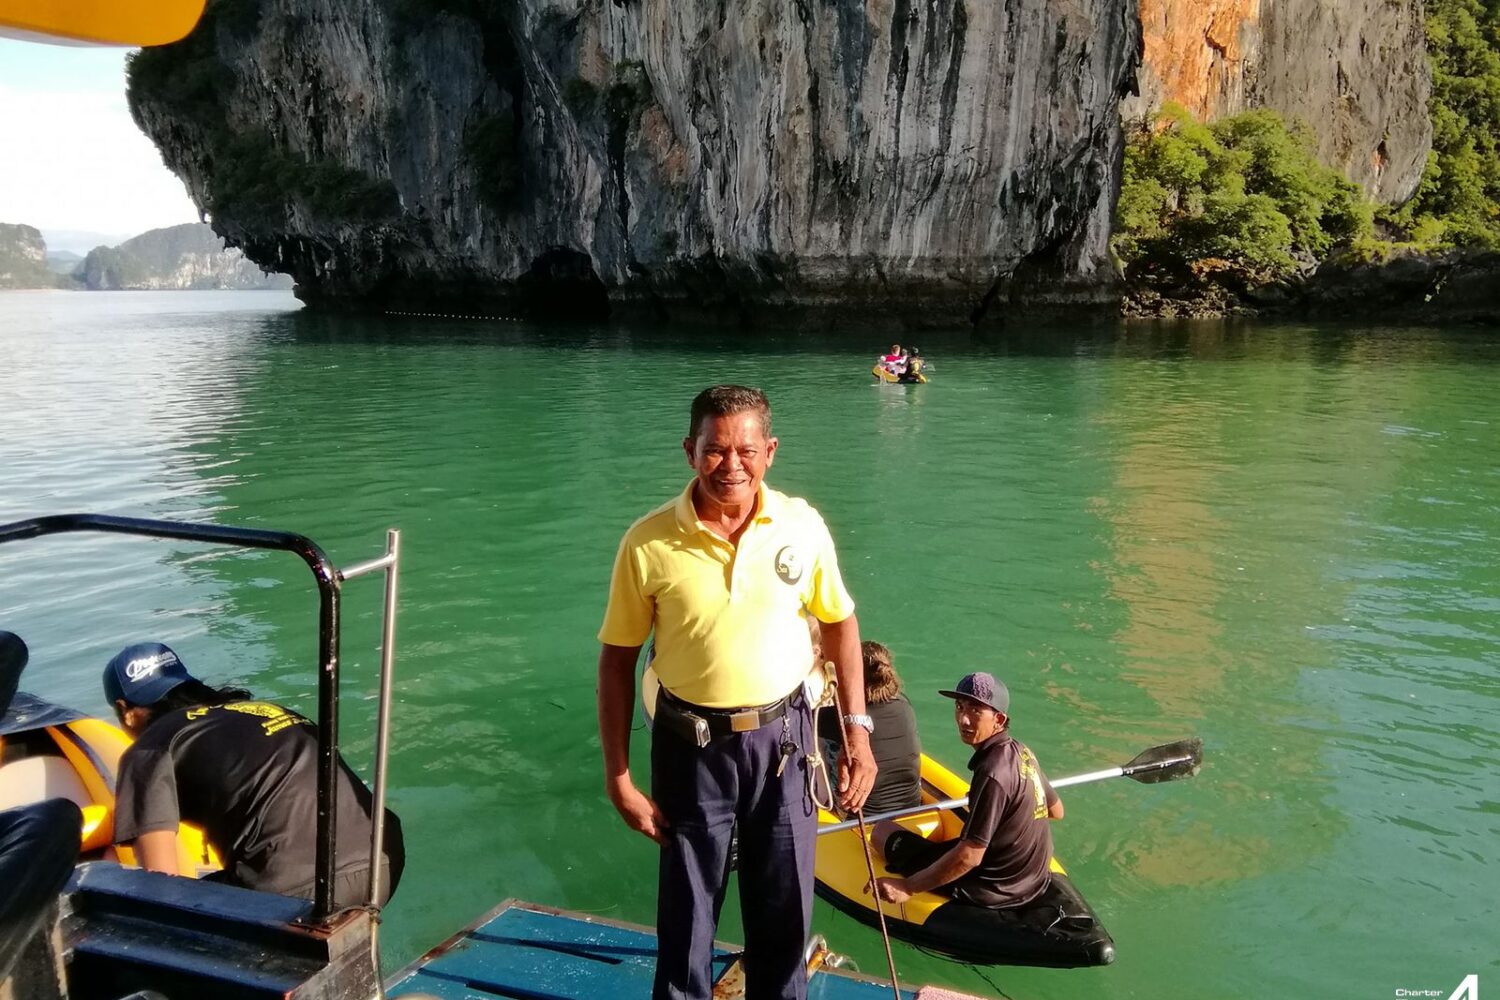 James Bond Island Phang Nga Bay Phuket